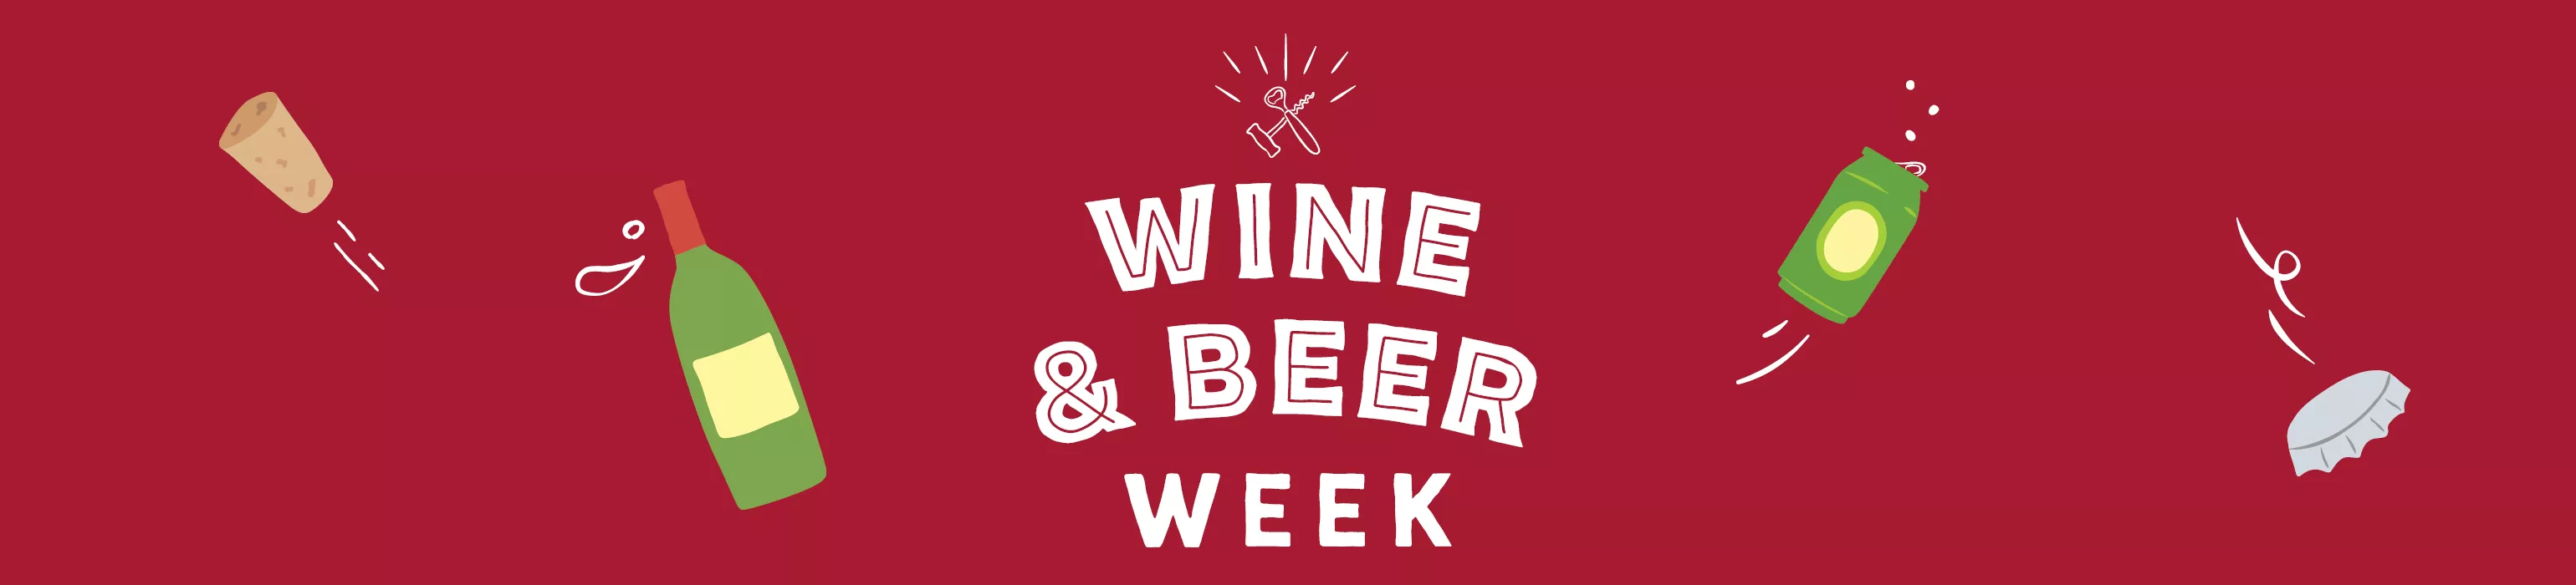 Wine & Beer week on now